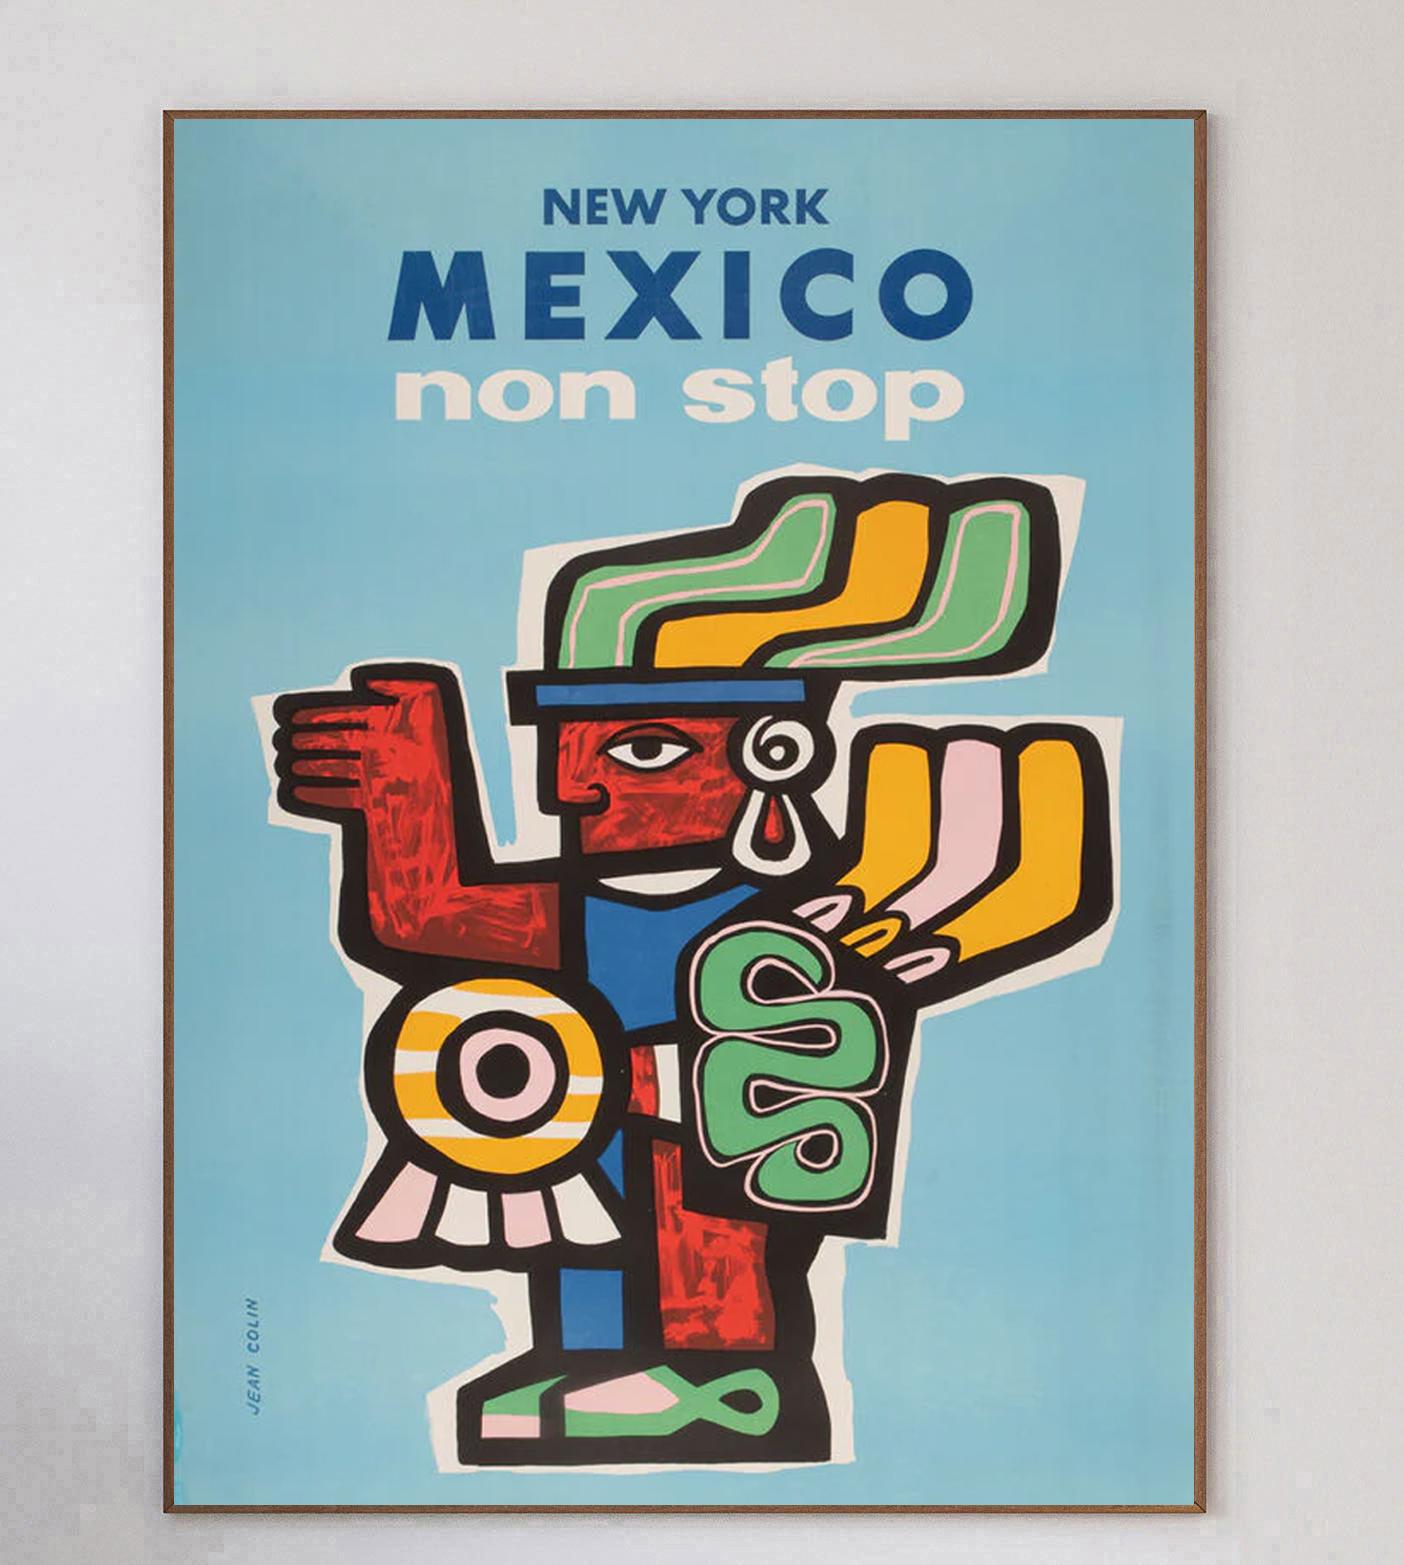 Cette superbe affiche, réalisée par le grand artiste français Jean Colin, a été créée en 1960 pour promouvoir les liaisons aériennes sans escale entre New York et le Mexique. Représentant une figure maya dans le style typique de Condit, cette pièce